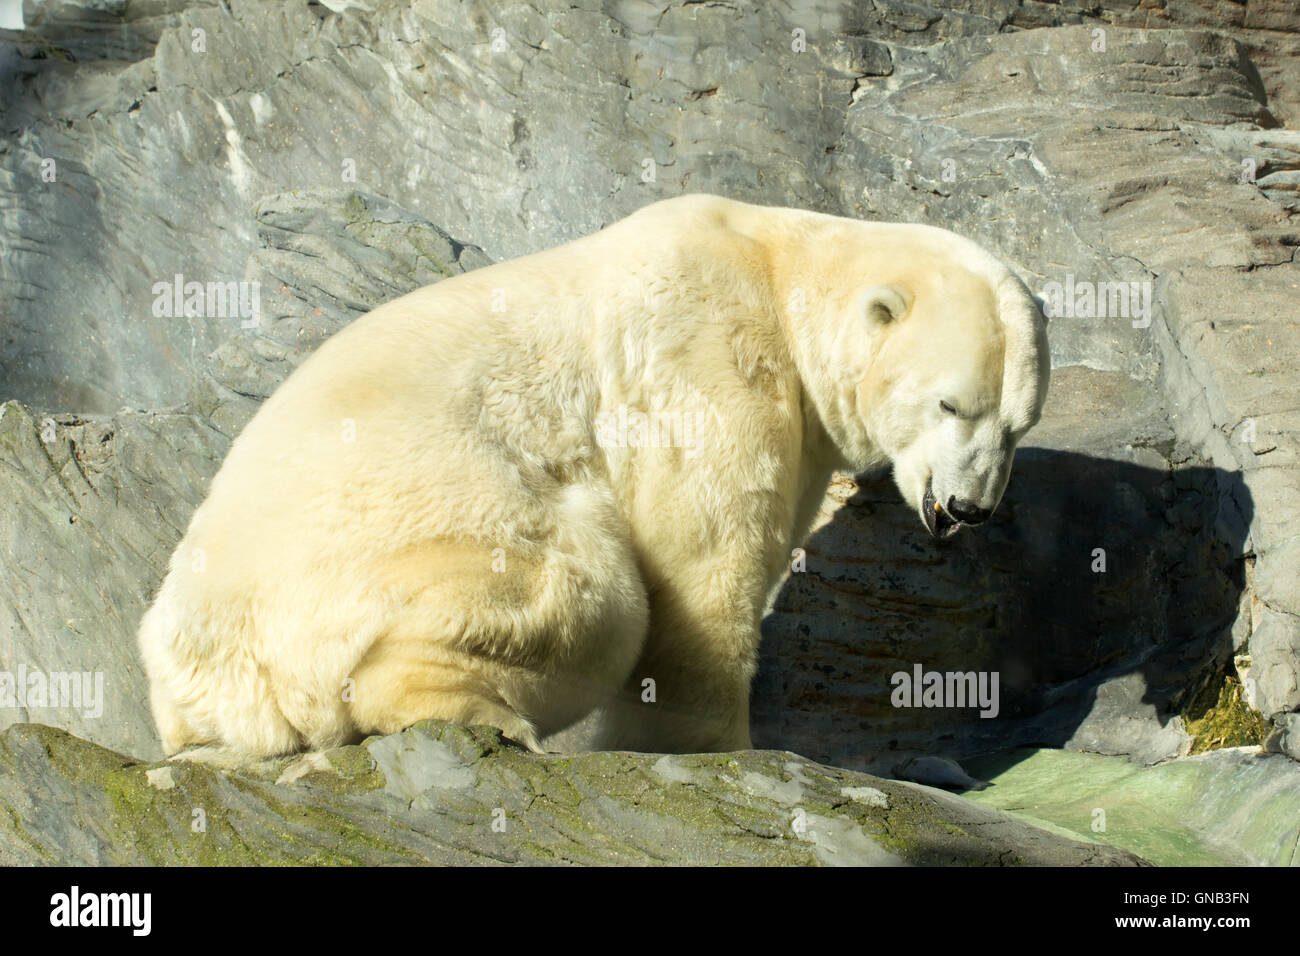 Polar bear at zoo Stock Photo